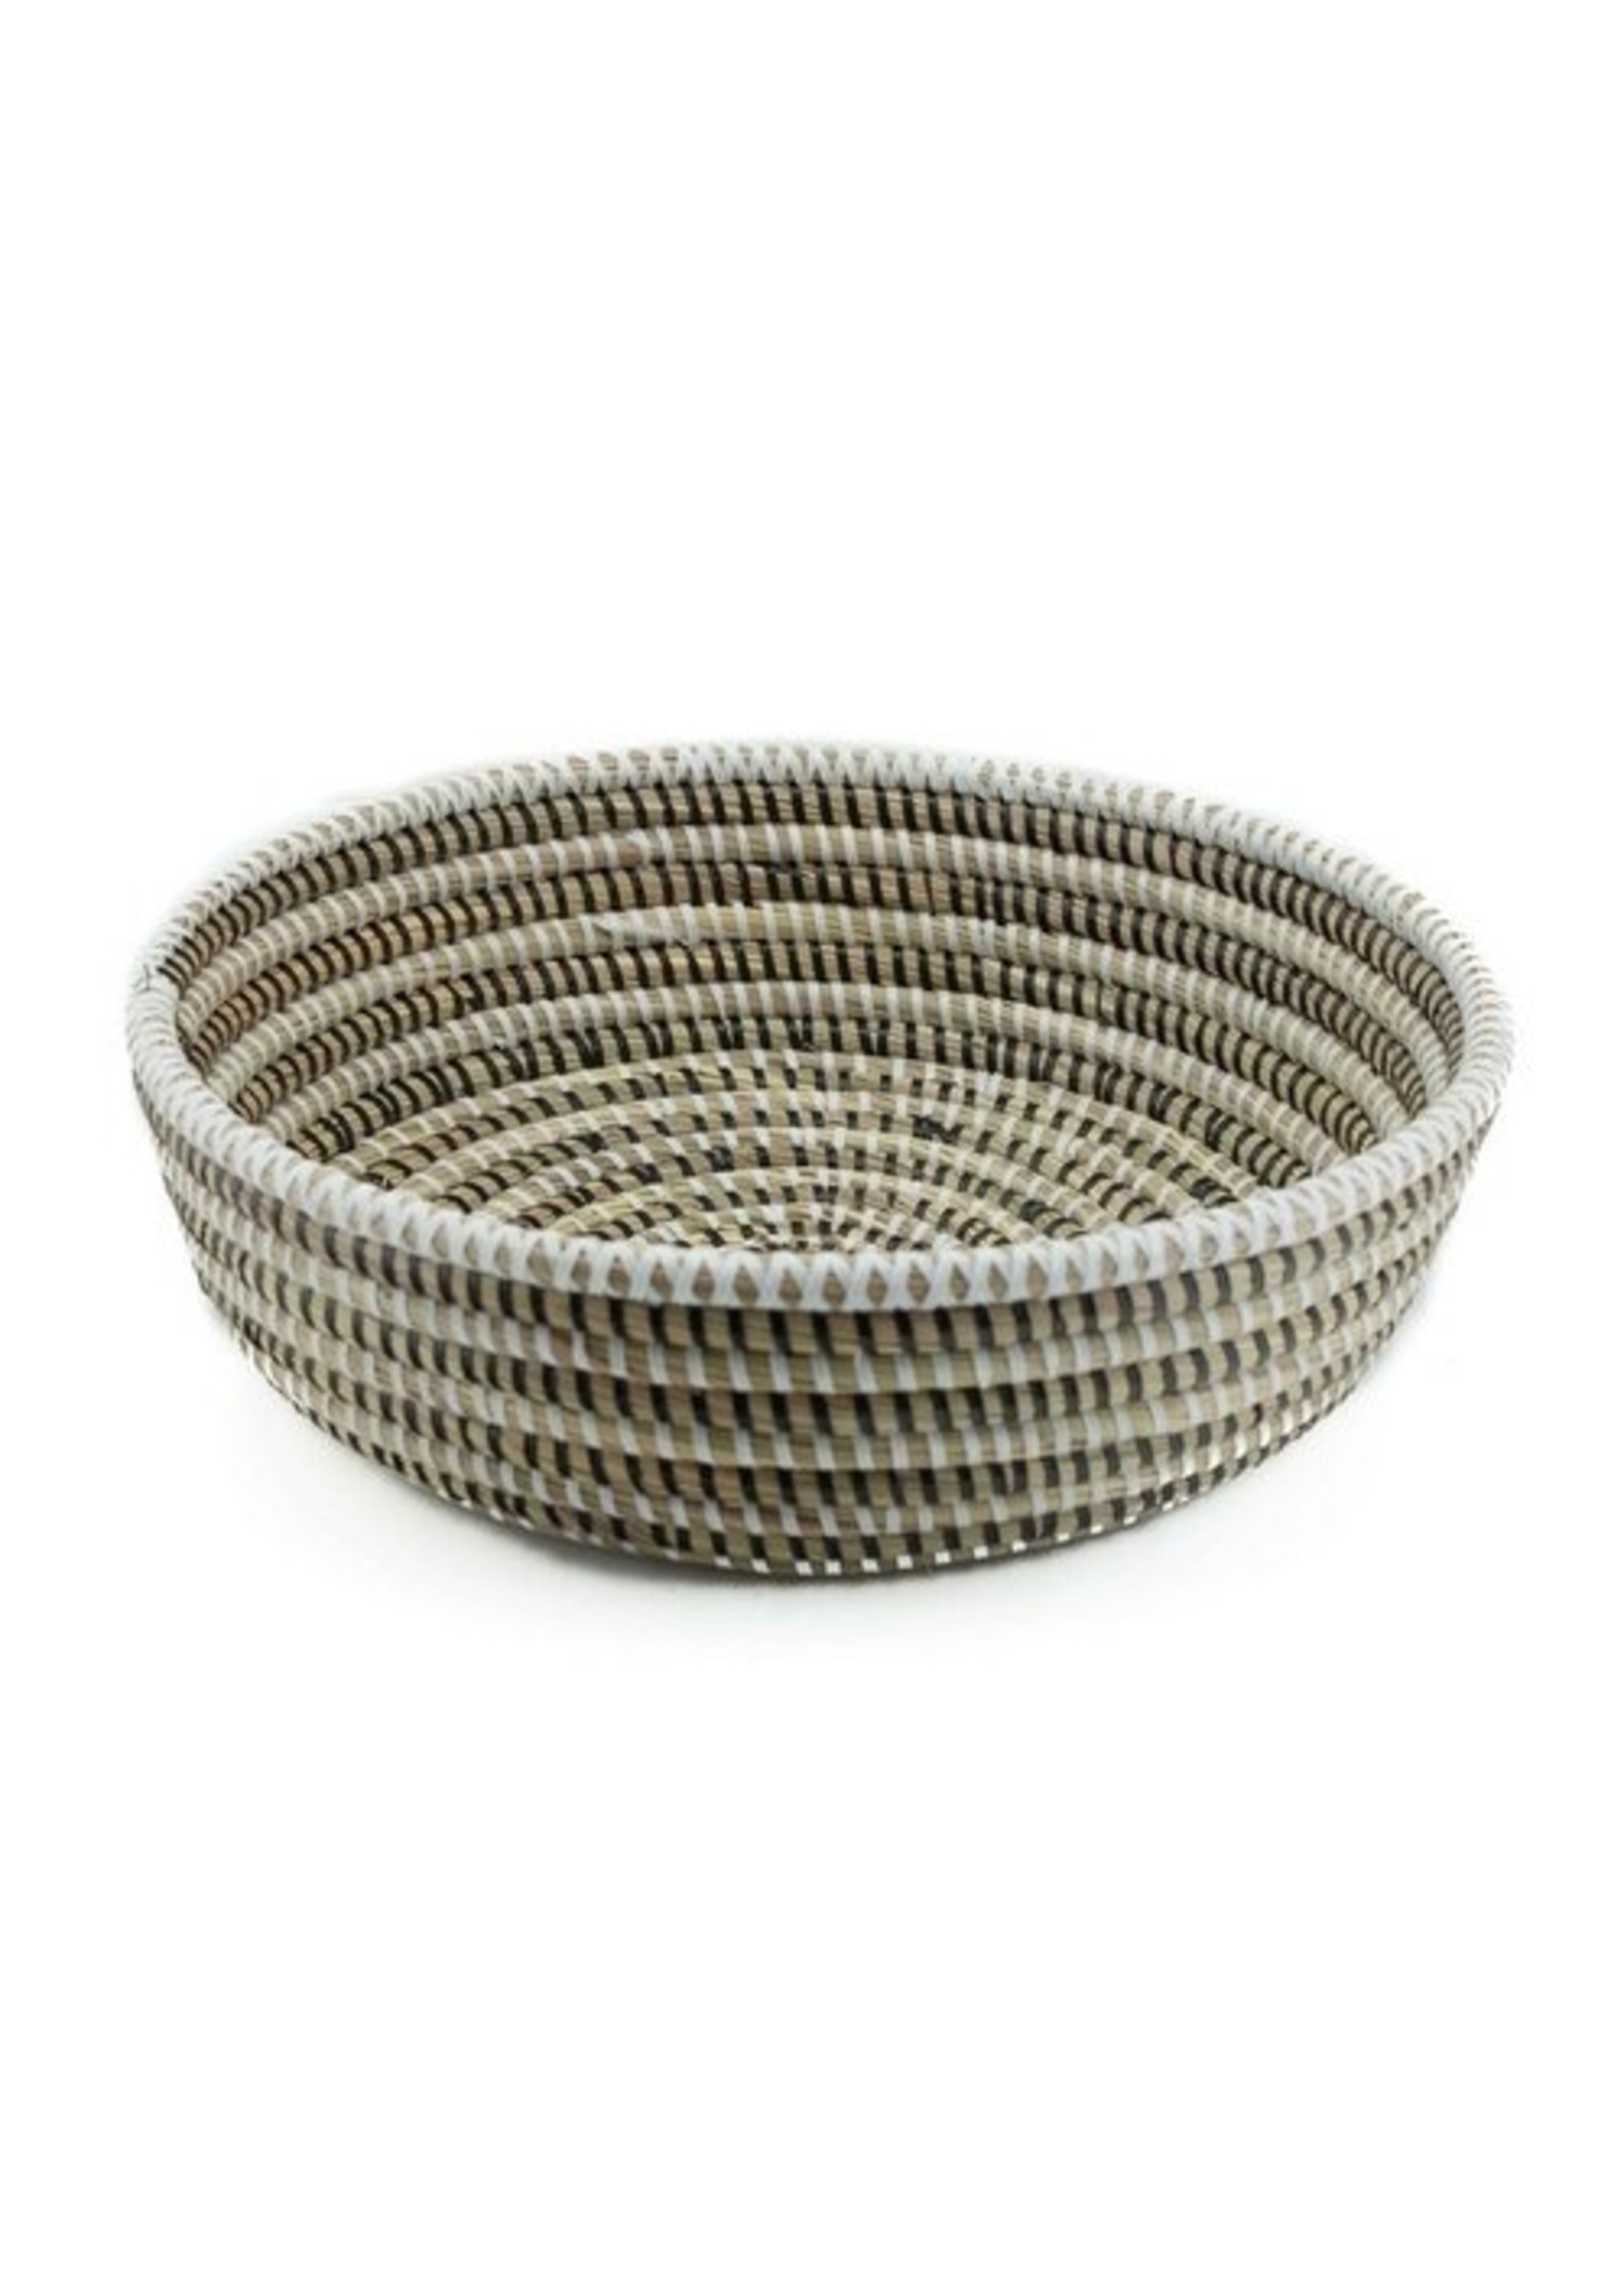 Baskets, Beads & Basics Rieten schaal zwart wit multi D30x8cm